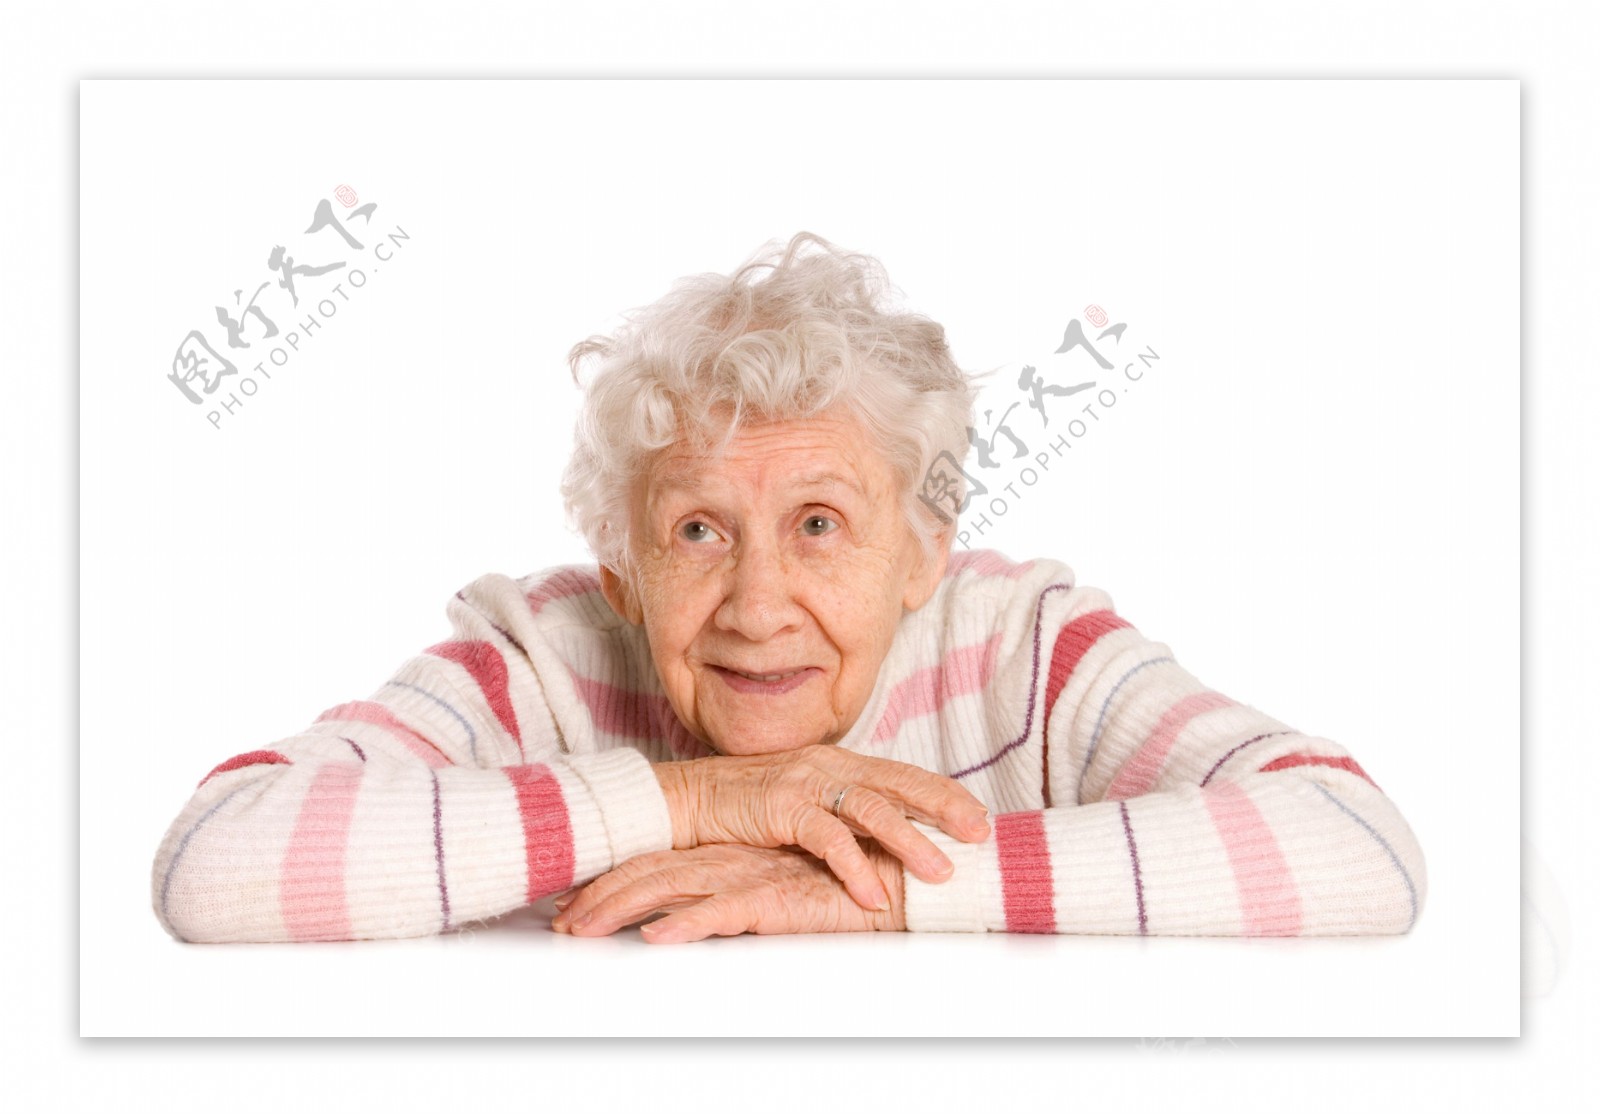 趴着的老年女人图片